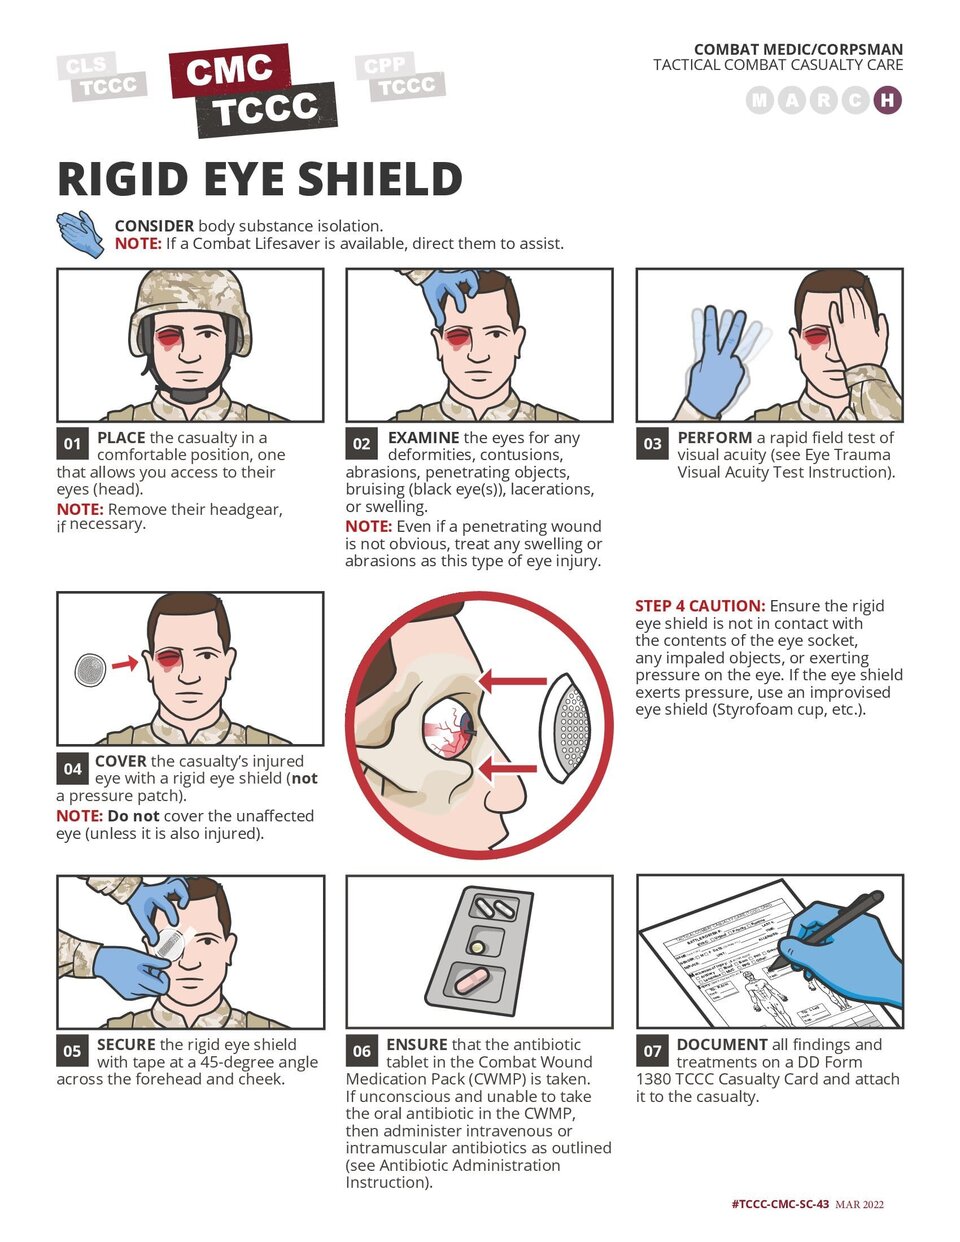 Application of a Rigid Eye Shield